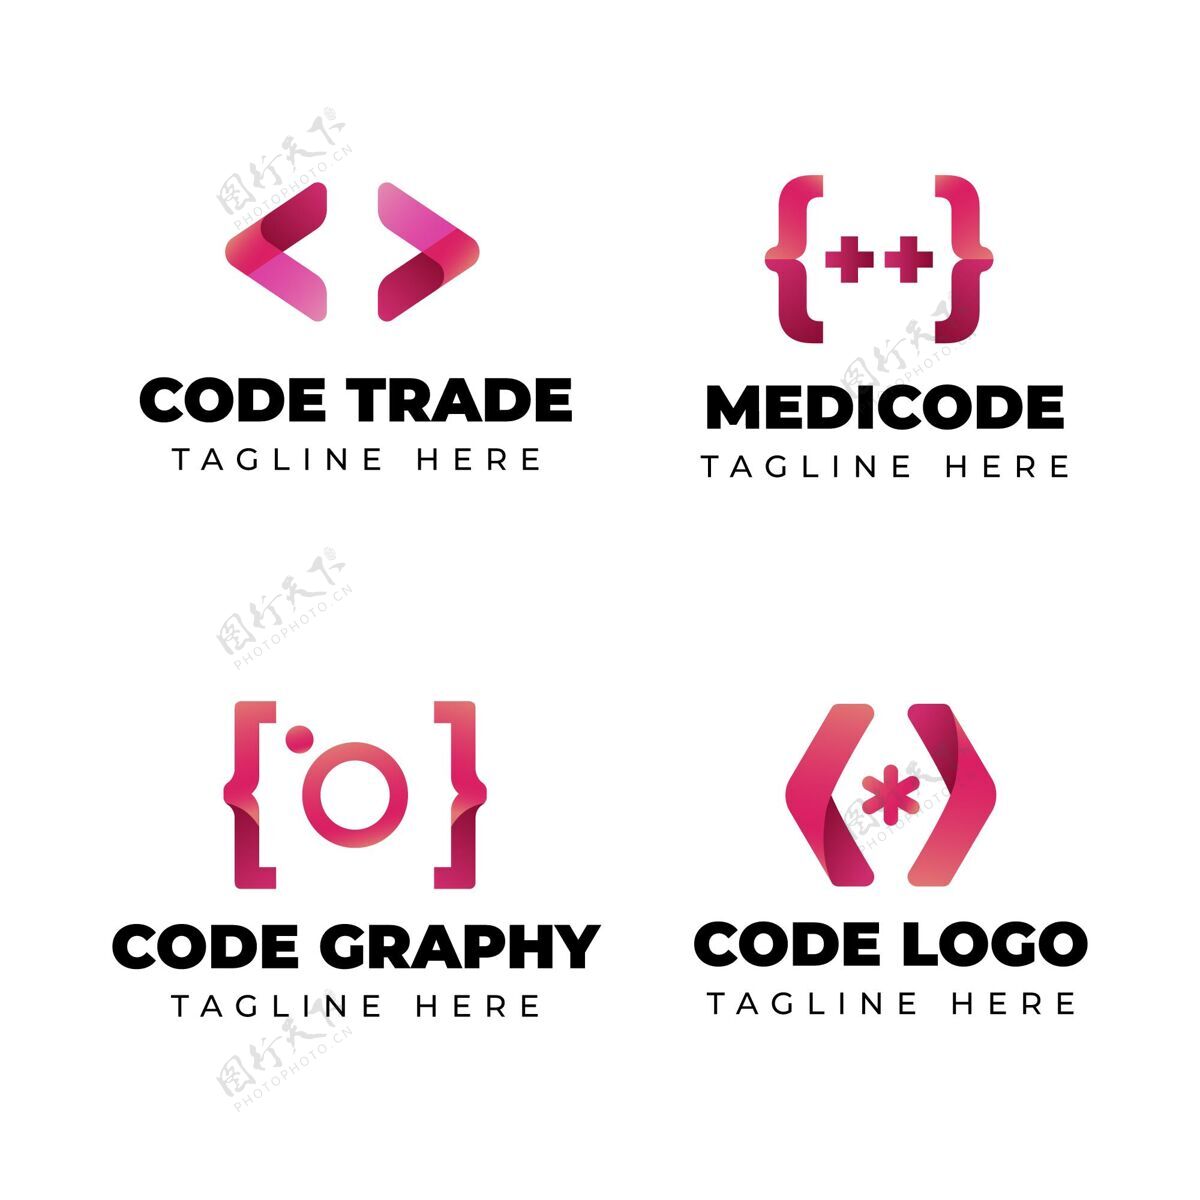 标志现代代码标志集企业标识公司包装